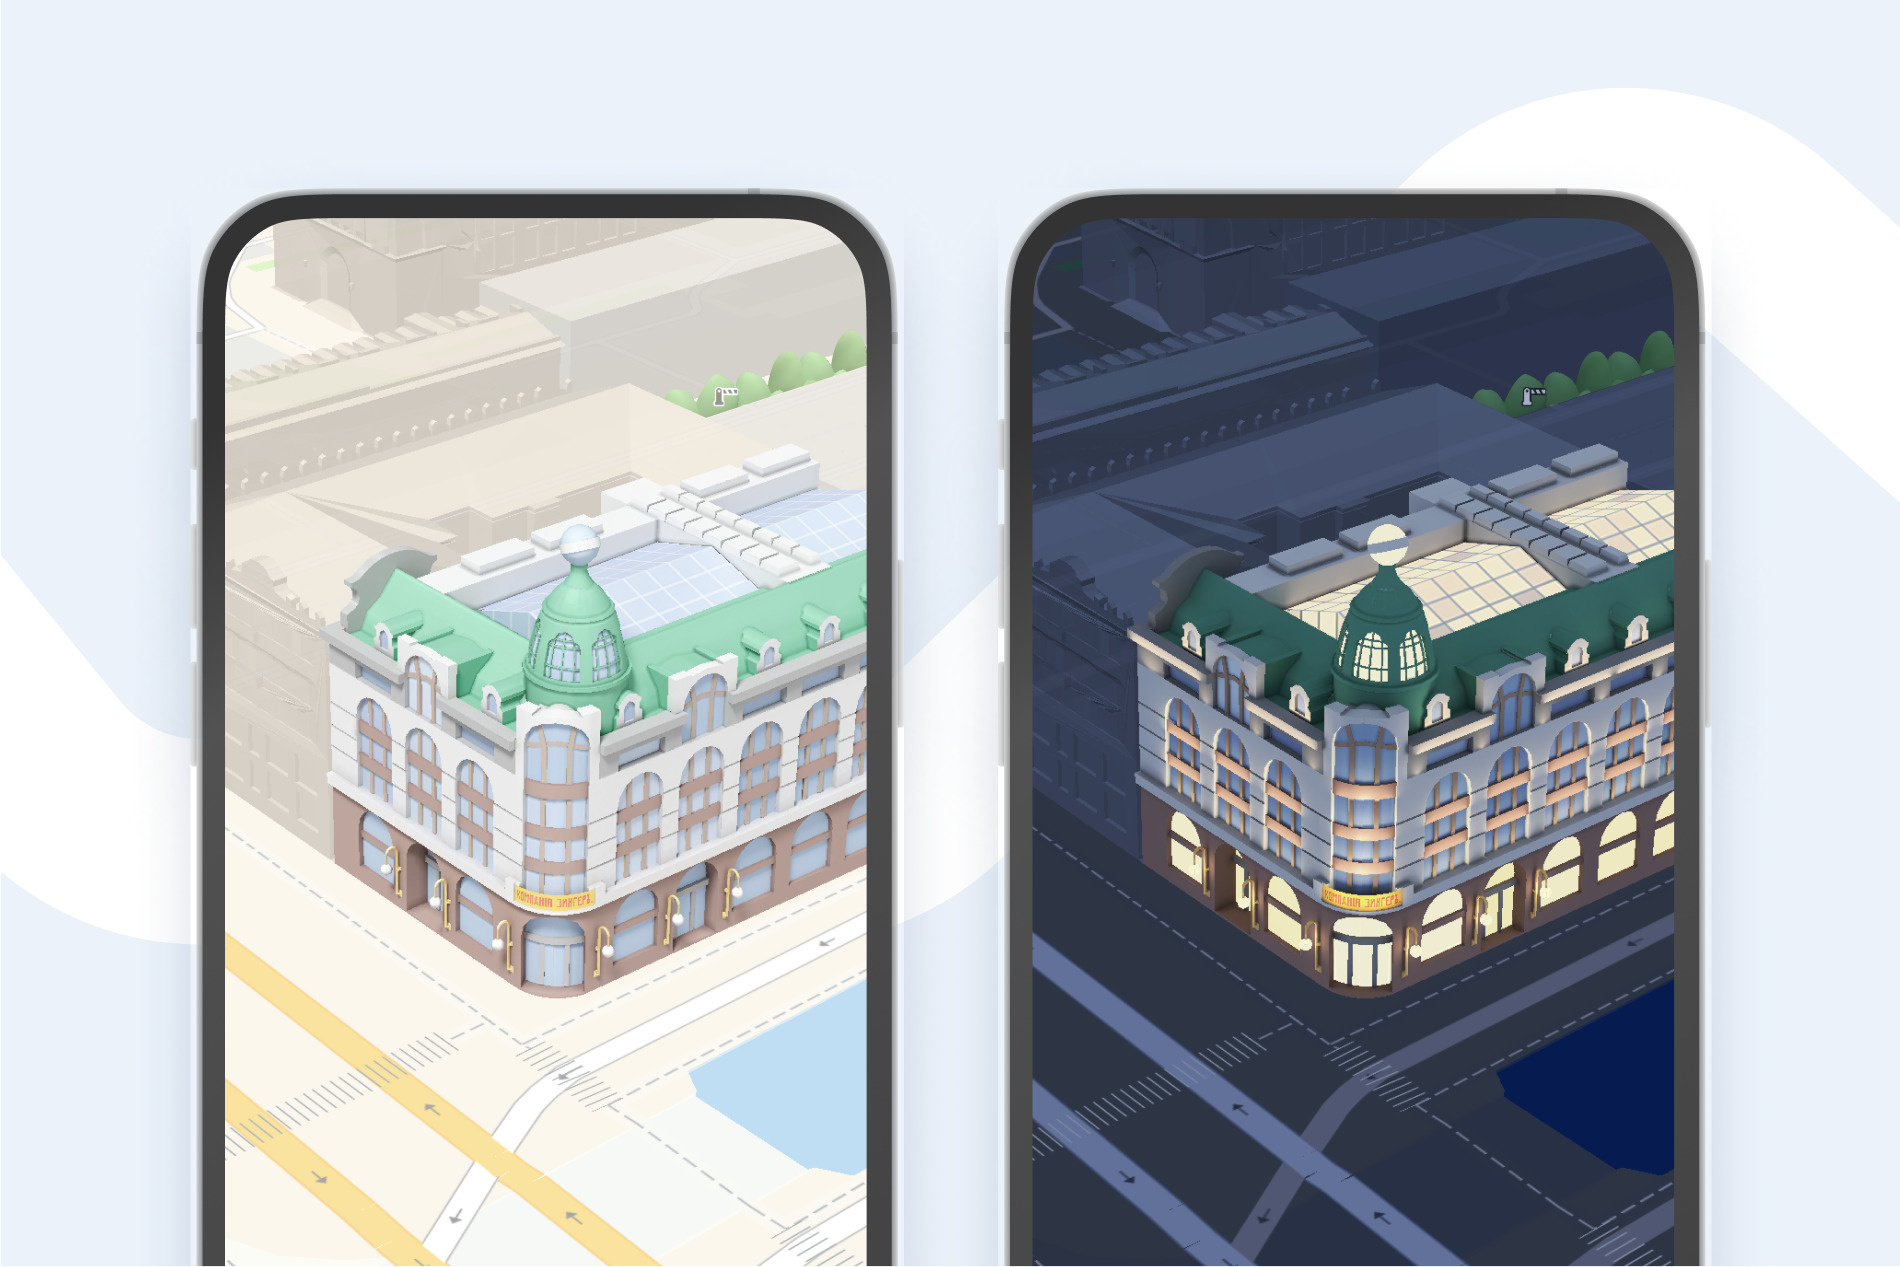 Достопримечательности Петербурга теперь можно рассмотреть на «Яндекс Картах» в 3D